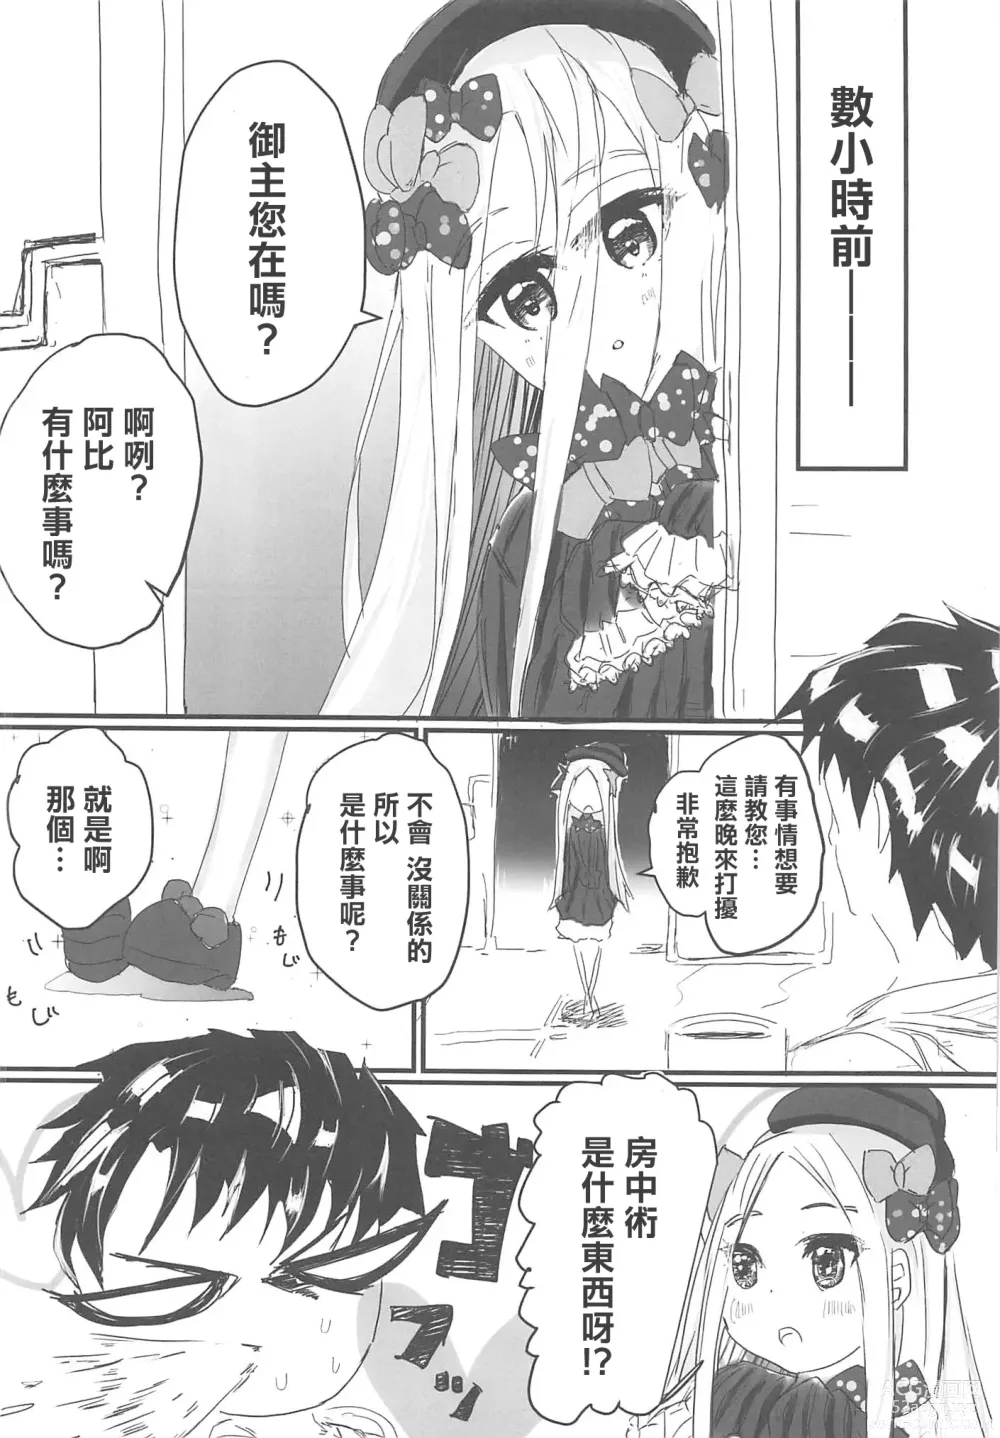 Page 7 of doujinshi Oshiete! FGO Genki no Deru Shikumi